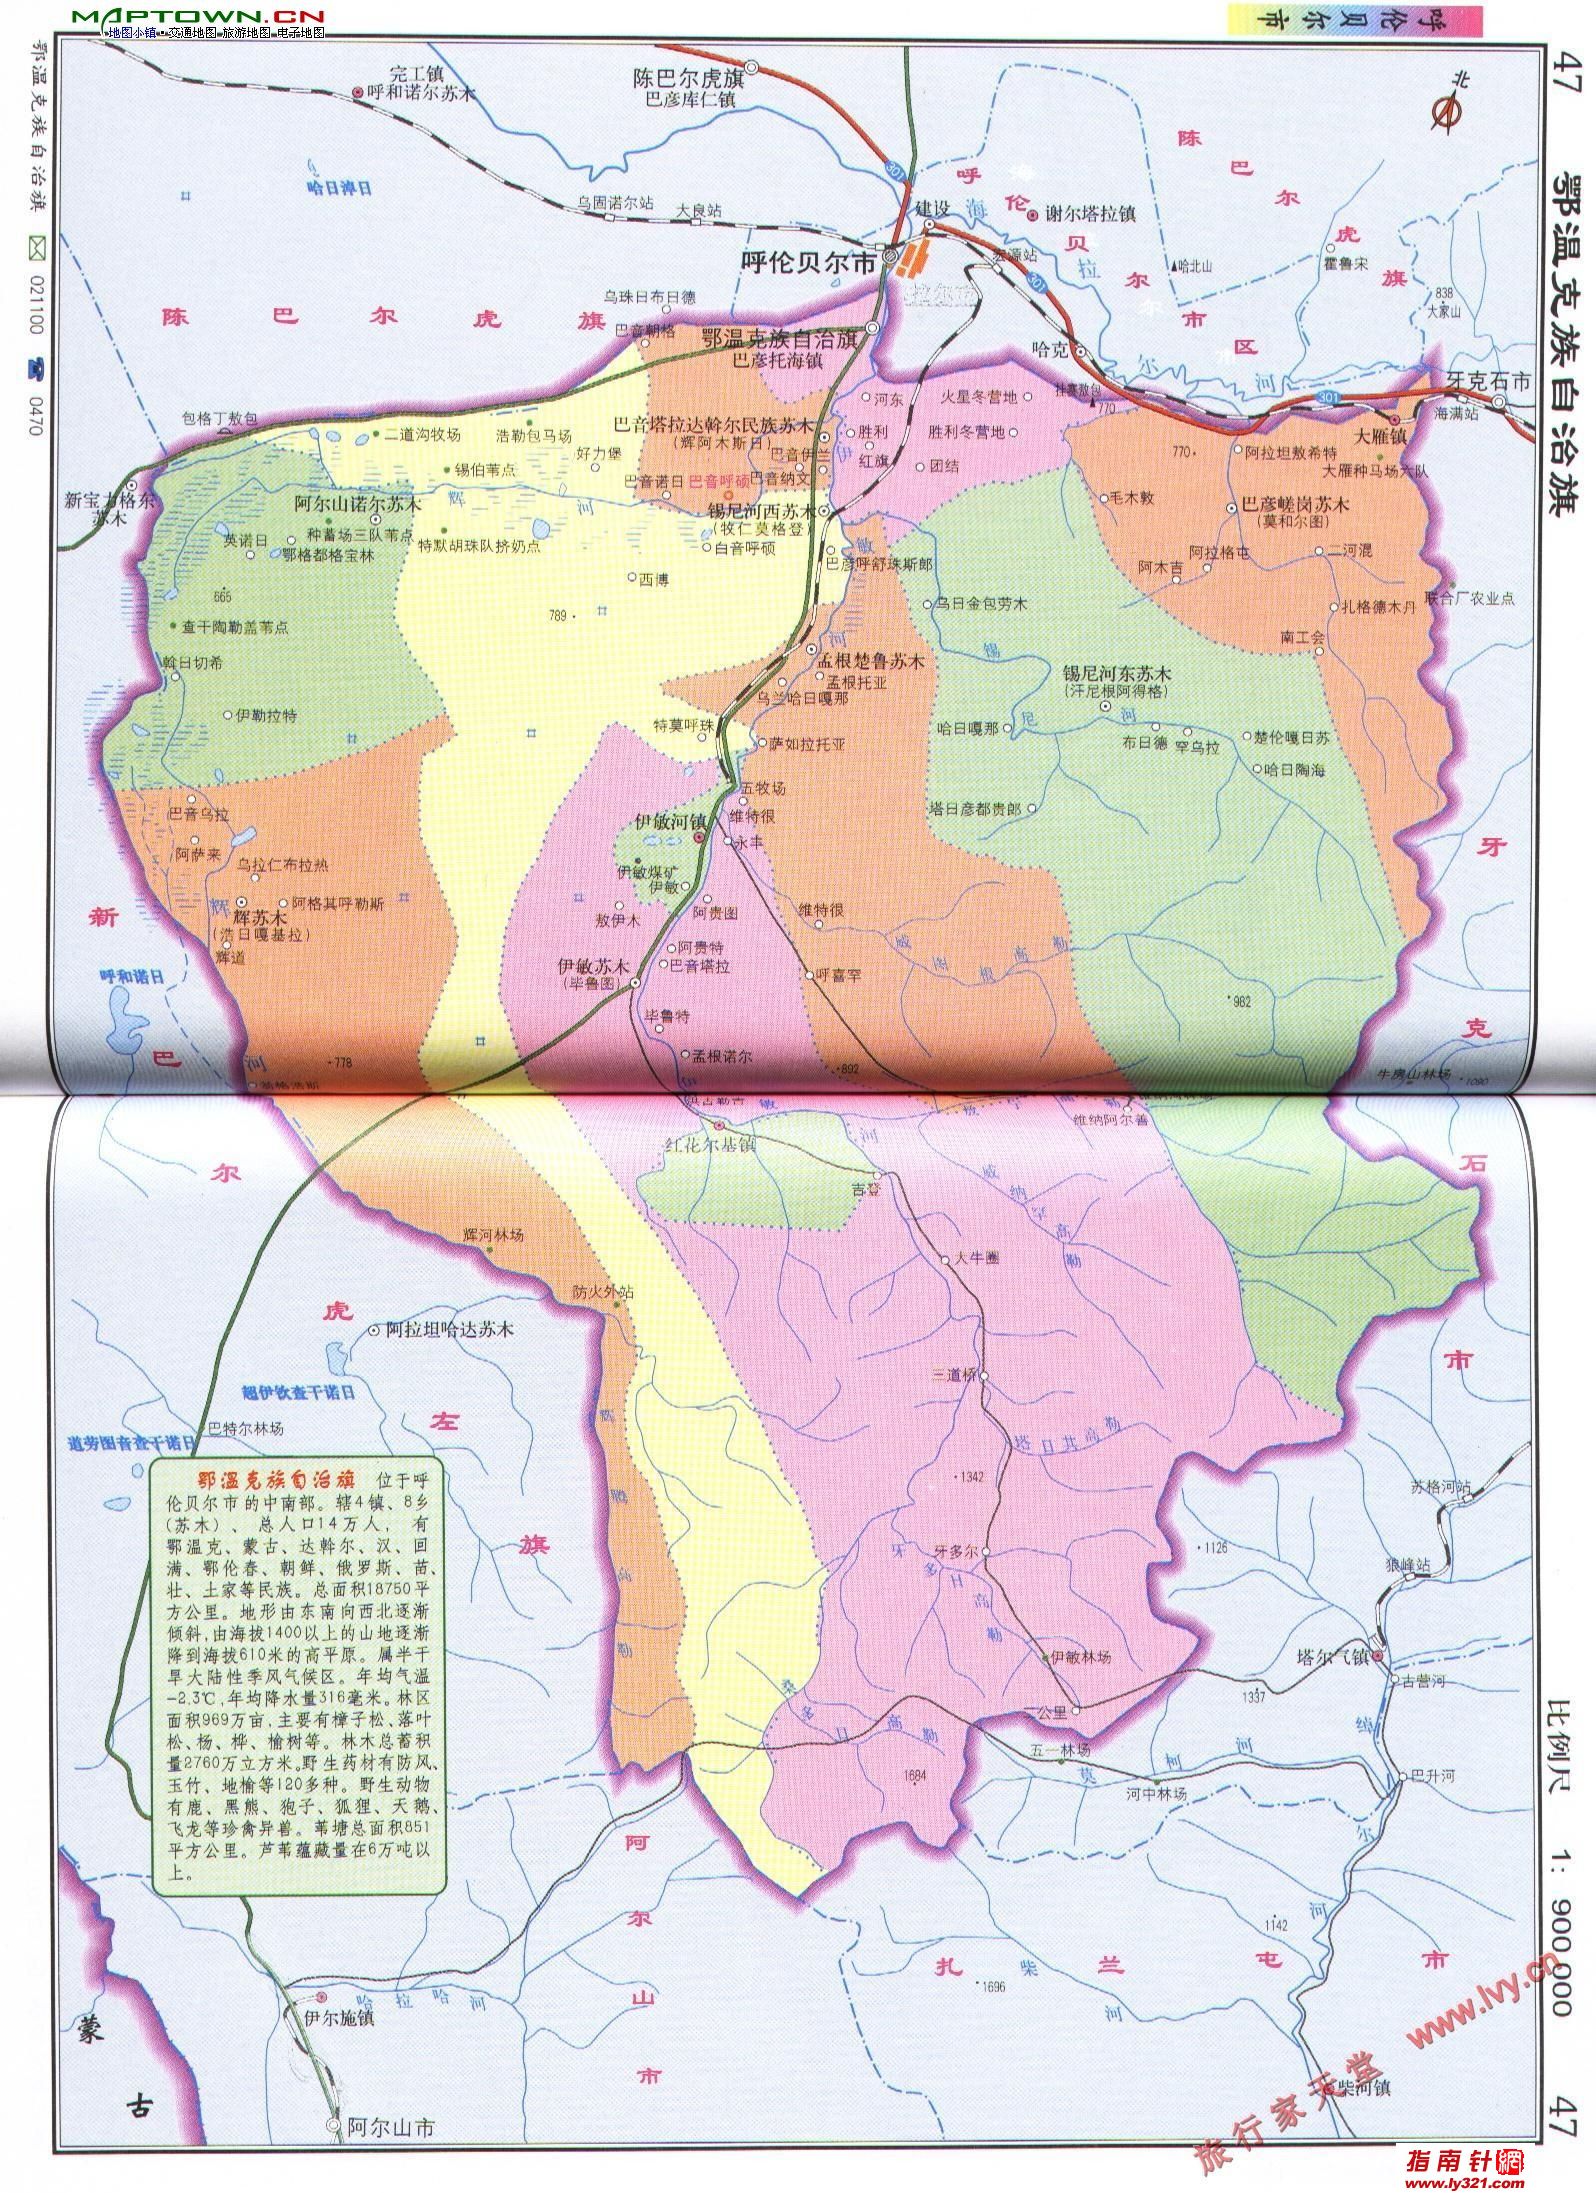 内蒙古呼伦贝尔鄂温克族自治旗区划交通地图